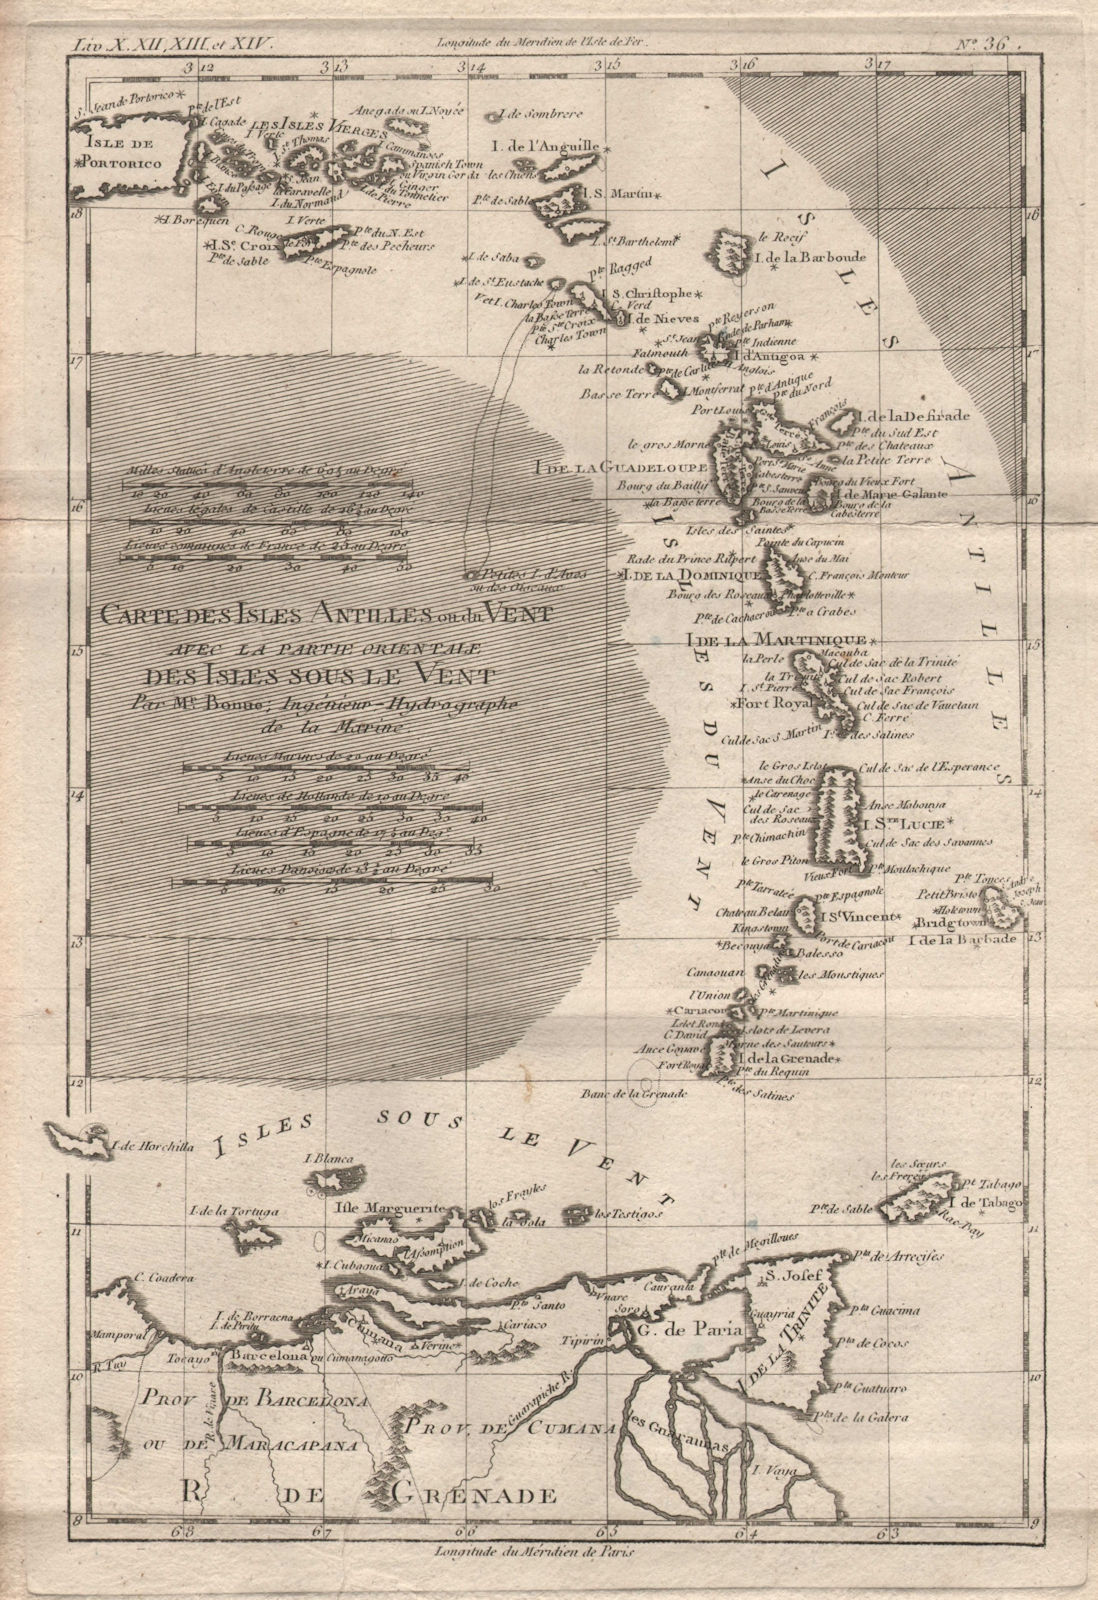 Associate Product Isles Antilles ou du [&] sous le vent. Windward Leeward islands. BONNE 1780 map